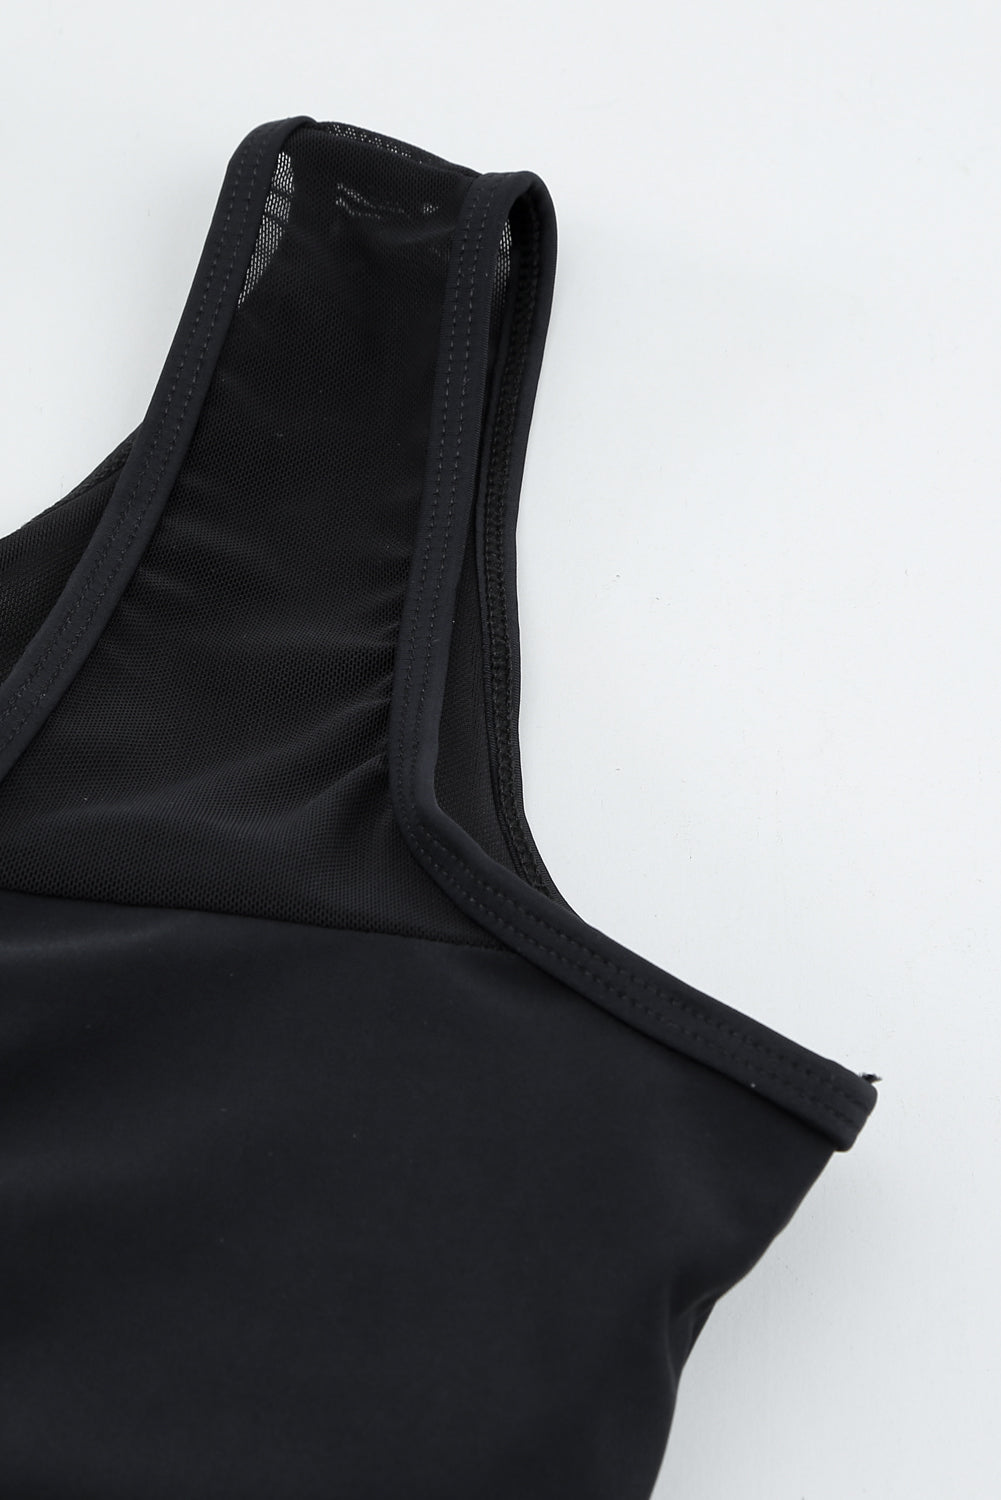 Crni jednodijelni kupaći kostim s izdubljenom mrežom na leđima